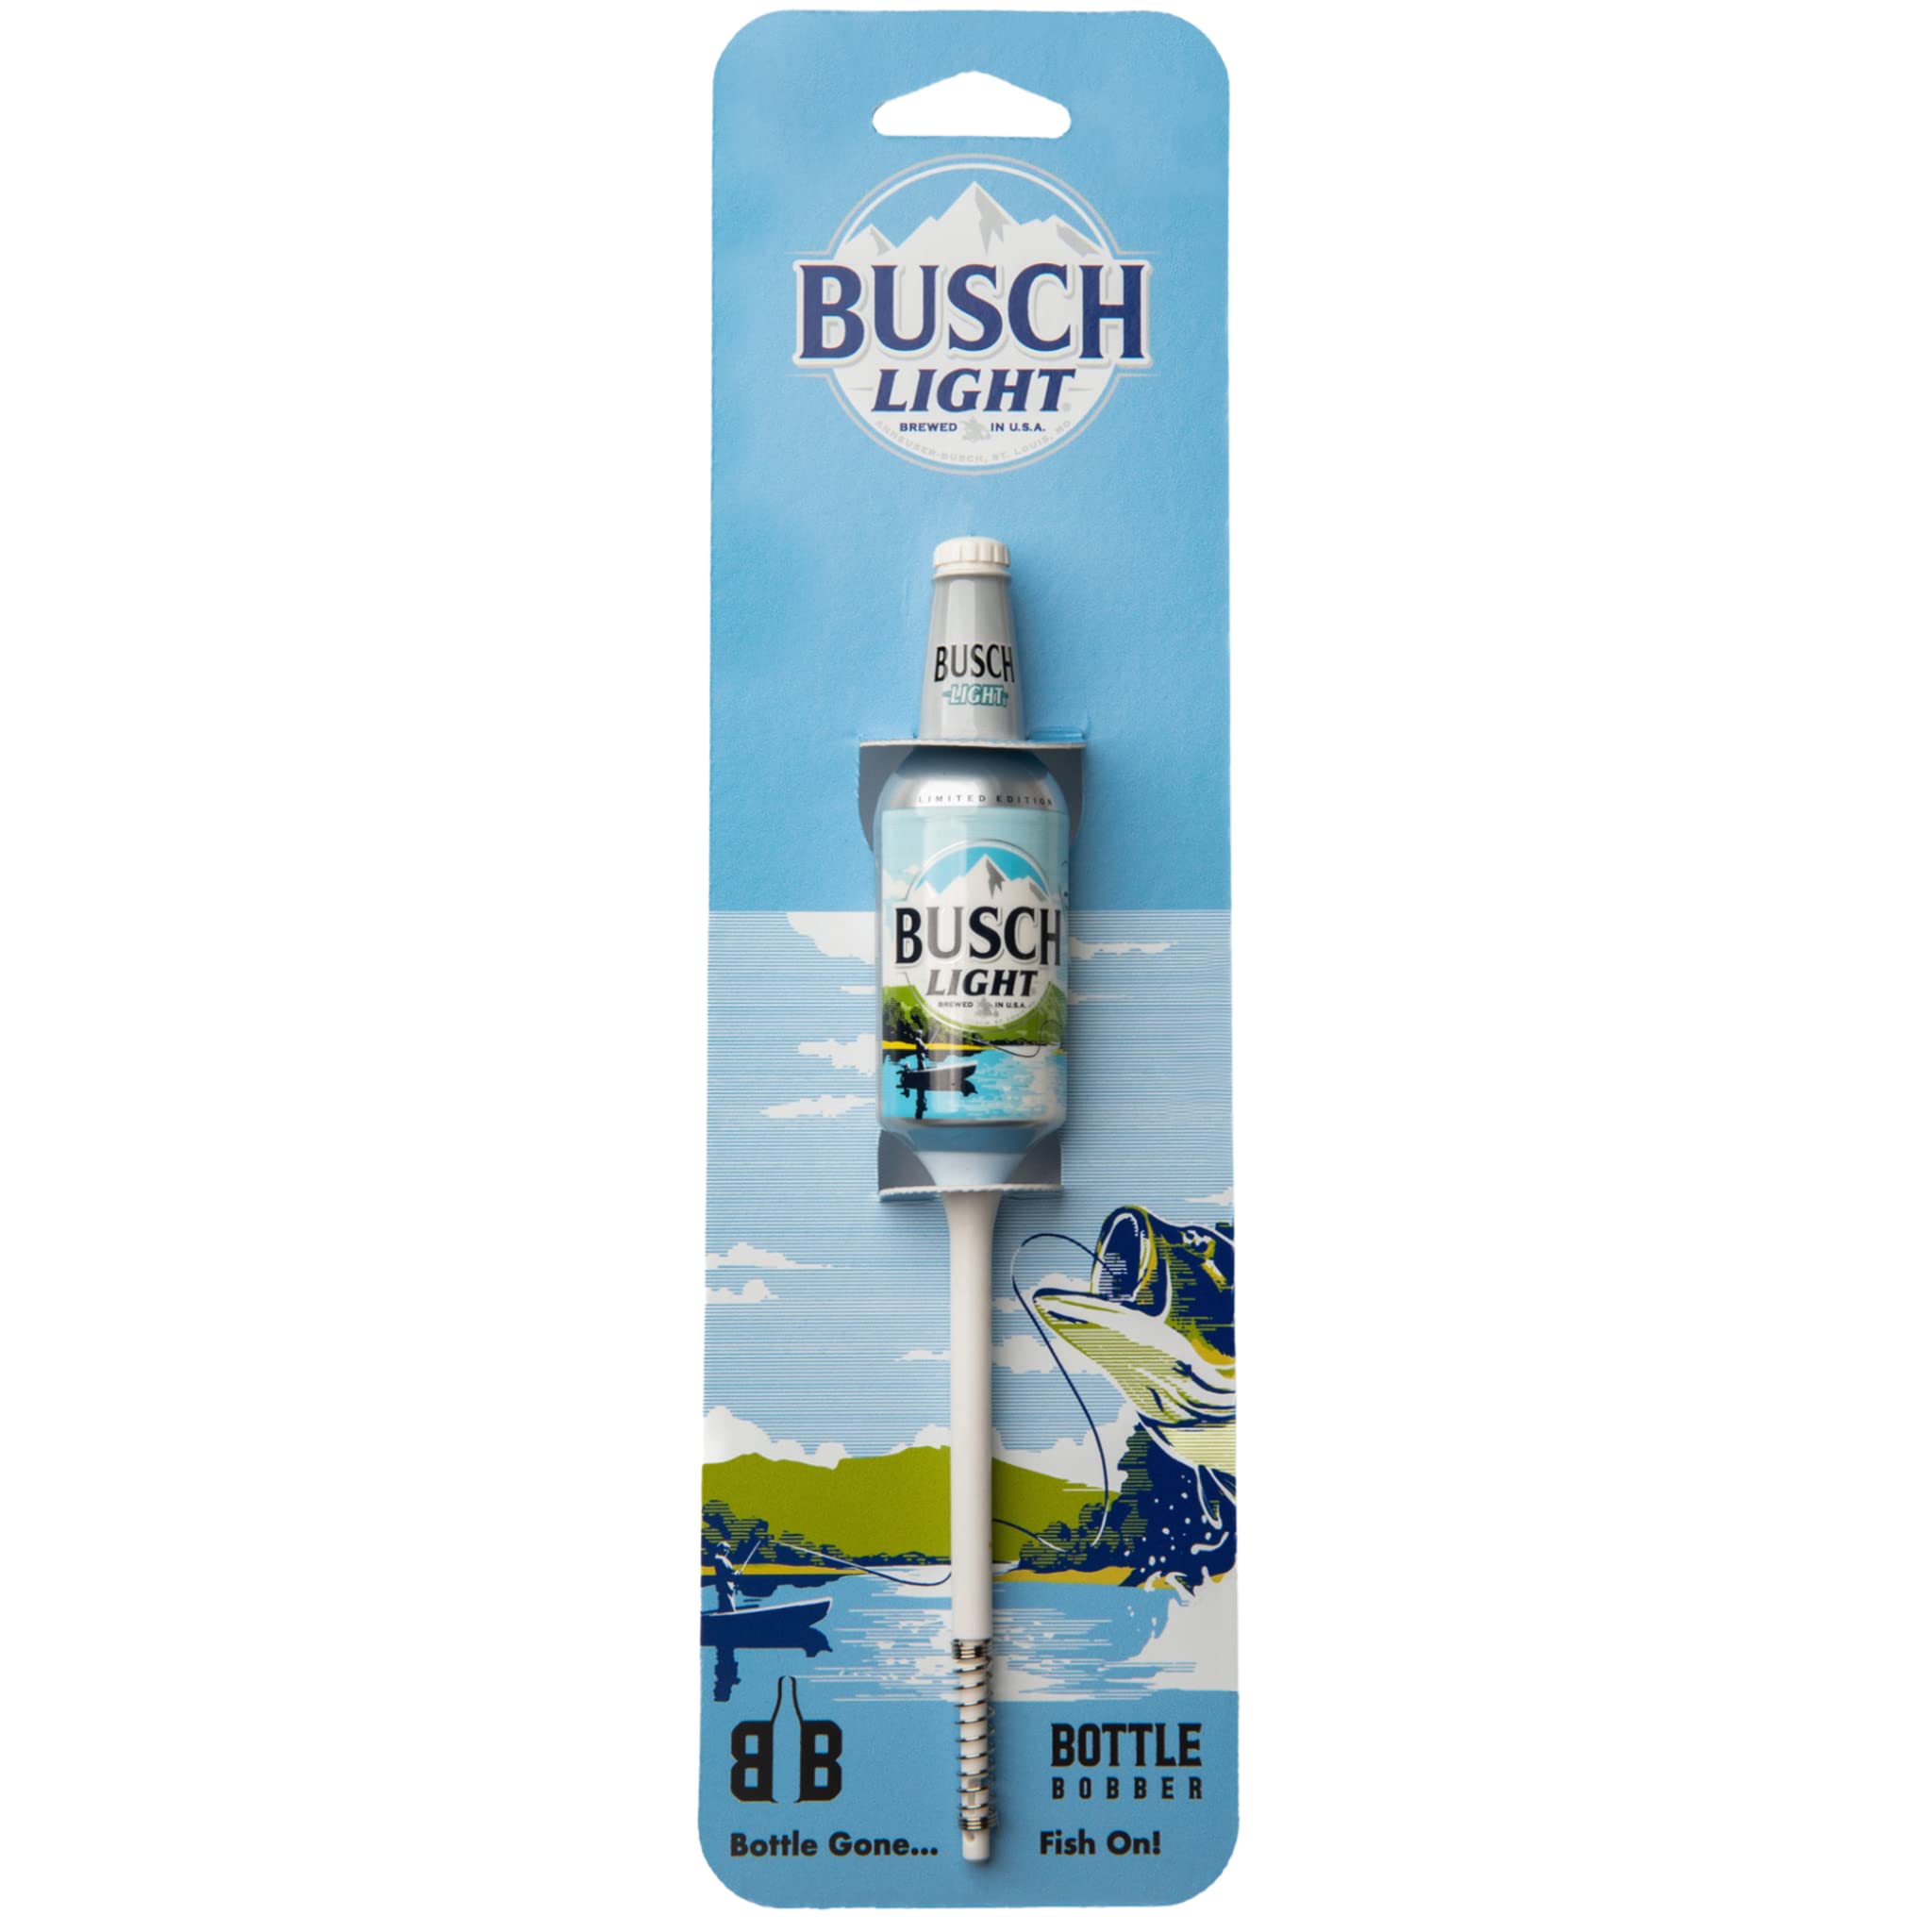 Southern Bell Brands Busch Light, Bottle Bobber